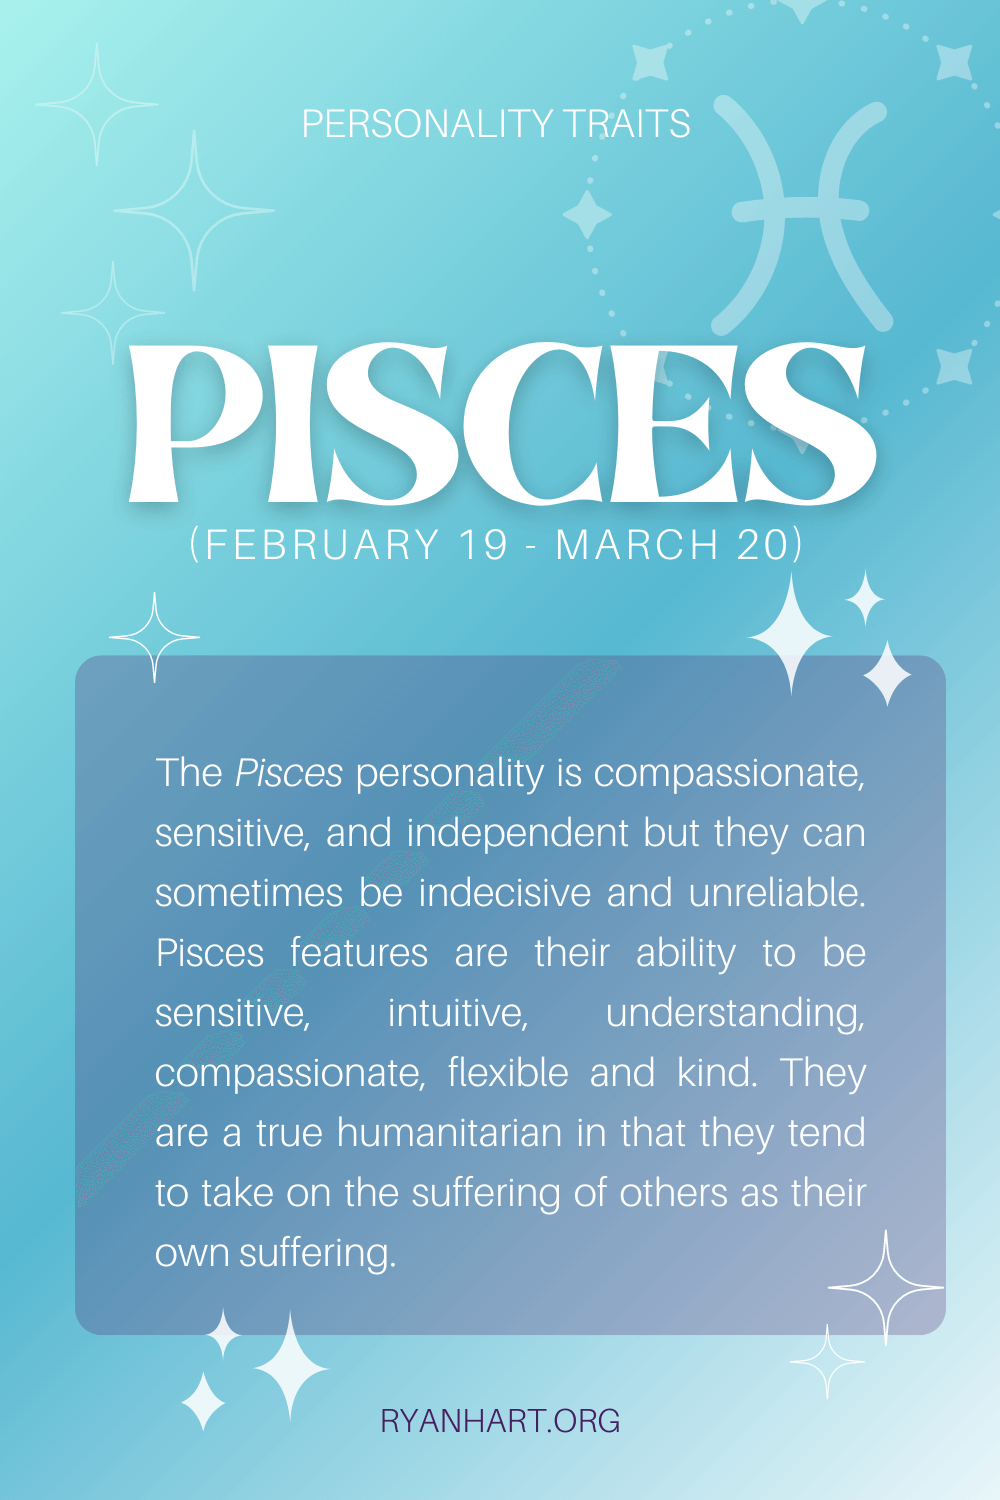  លក្ខណៈបុគ្គលិកលក្ខណៈ Pisces (កាលបរិច្ឆេទ៖ ថ្ងៃទី 19 ខែកុម្ភៈ ថ្ងៃទី 20 ខែមីនា)